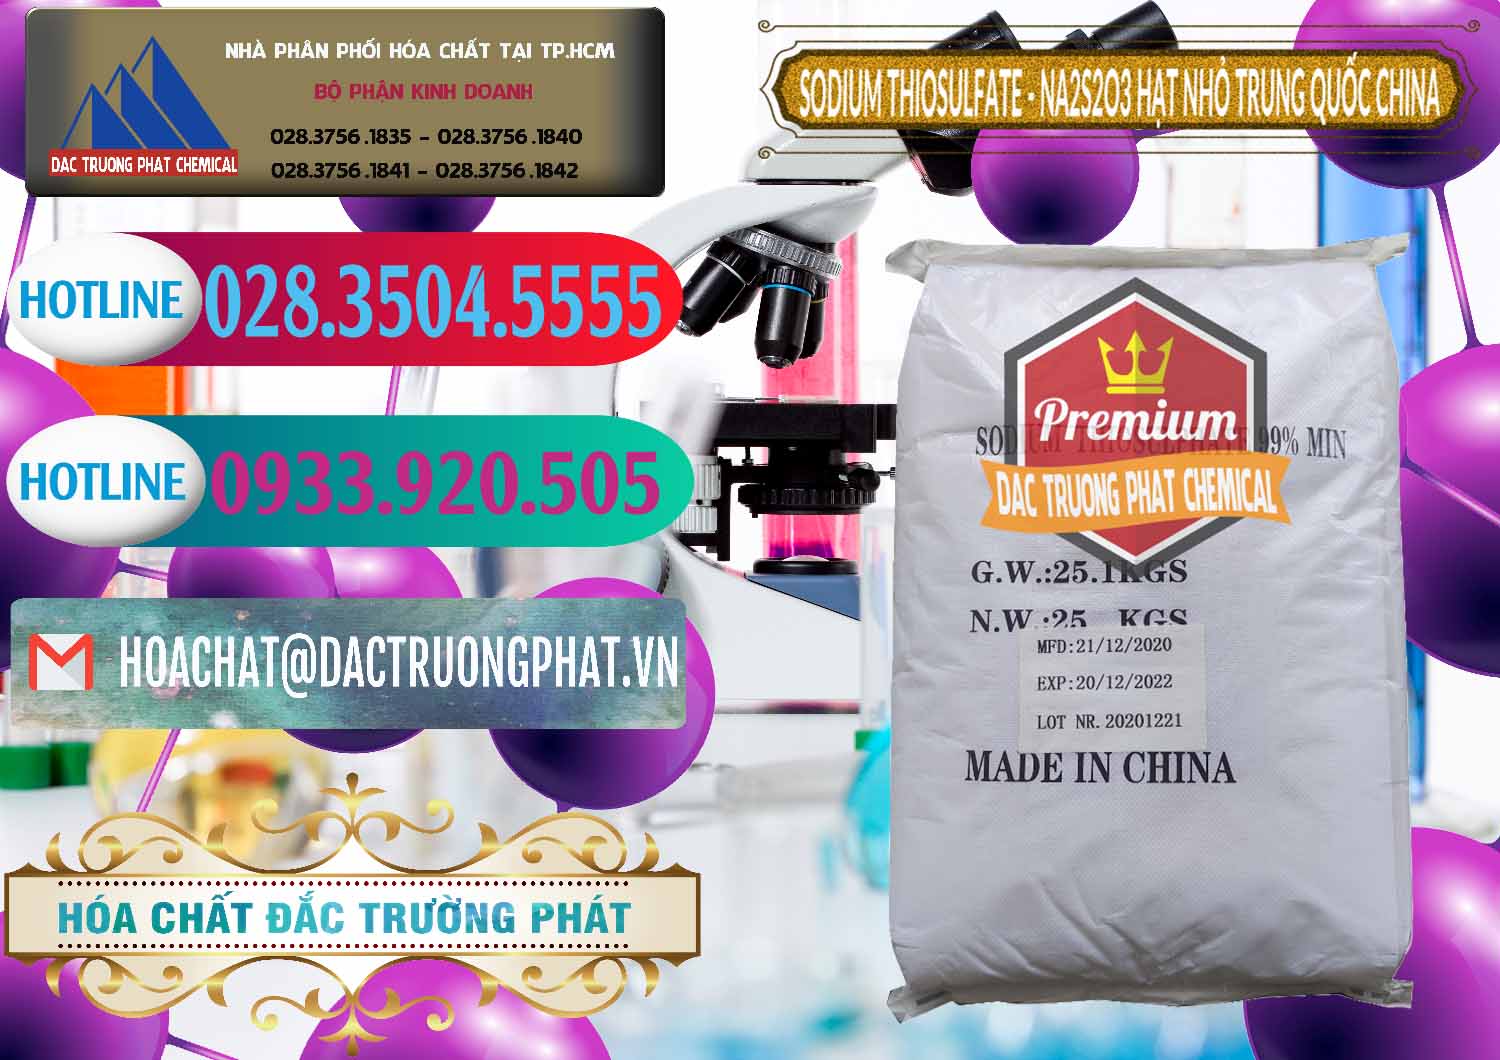 Nơi phân phối & bán Sodium Thiosulfate - NA2S2O3 Hạt Nhỏ Trung Quốc China - 0204 - Đơn vị cung cấp và bán hóa chất tại TP.HCM - truongphat.vn